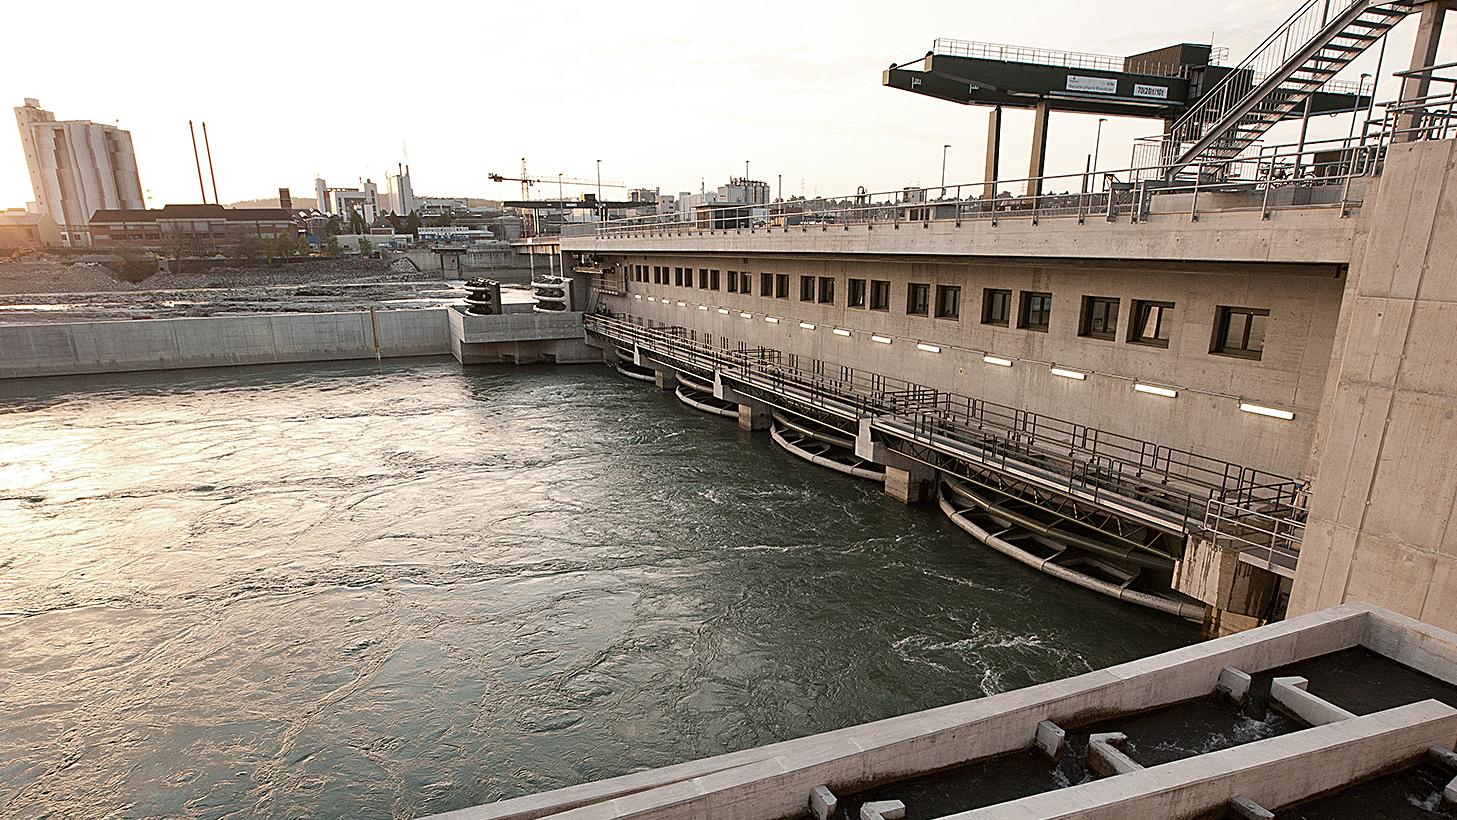 Technisches Bild des Hochrhein-Wasserkraftwerks von Energiedienst in Rheinfelden. Das Kraftwerk produziert Ökostrom aus der Kraft des Flusses Rheins.